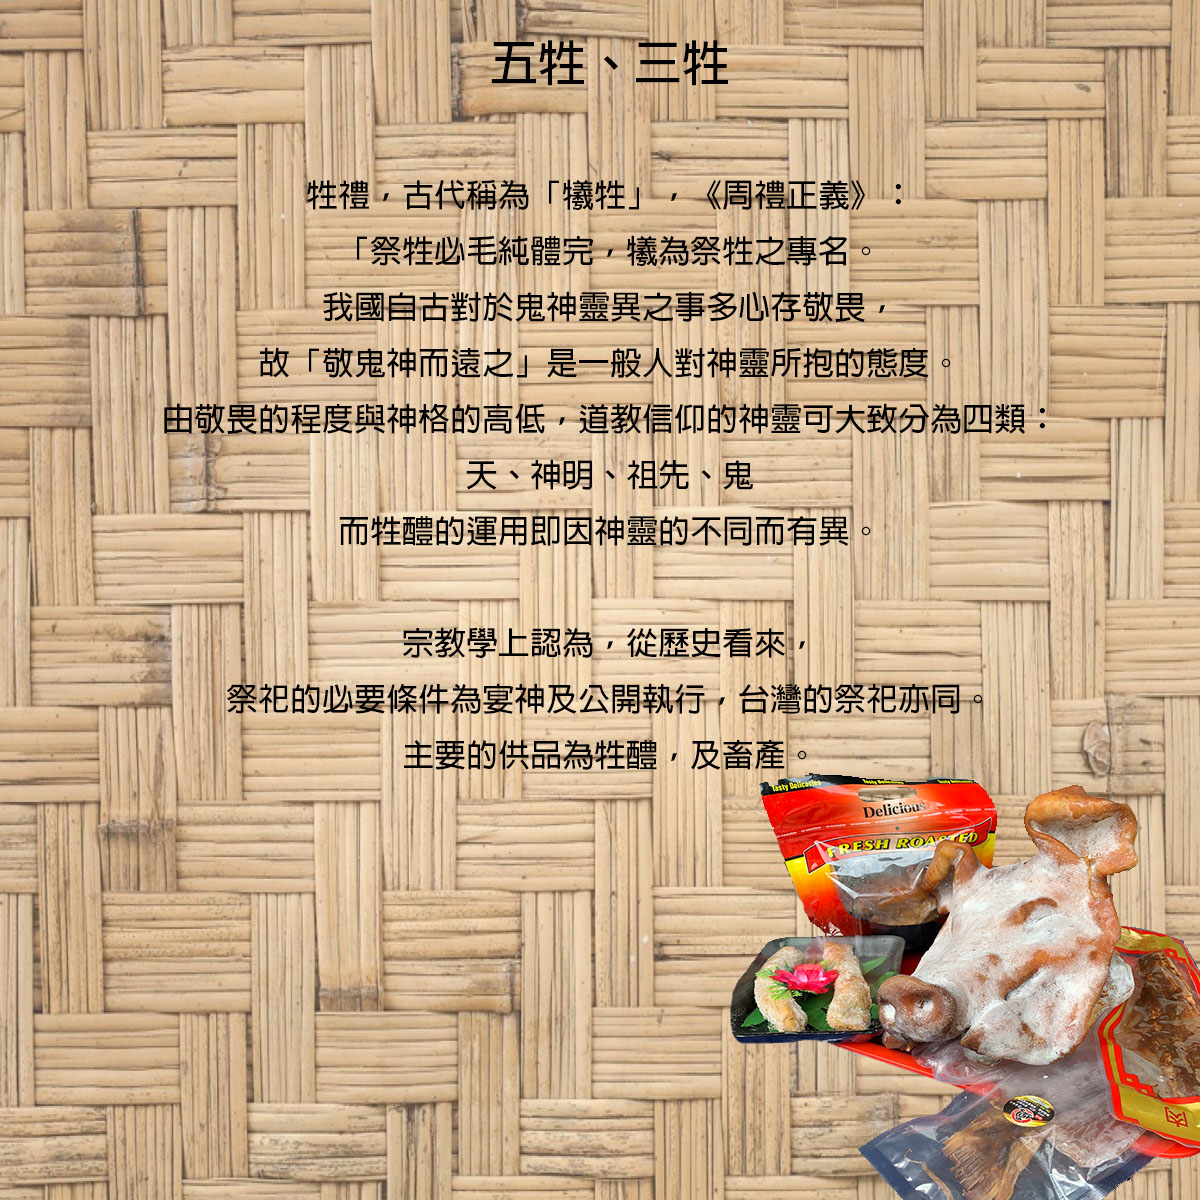 法事祭品-尾日飽福葷六飯菜全組含未煮八珍湯藥壺(葷)